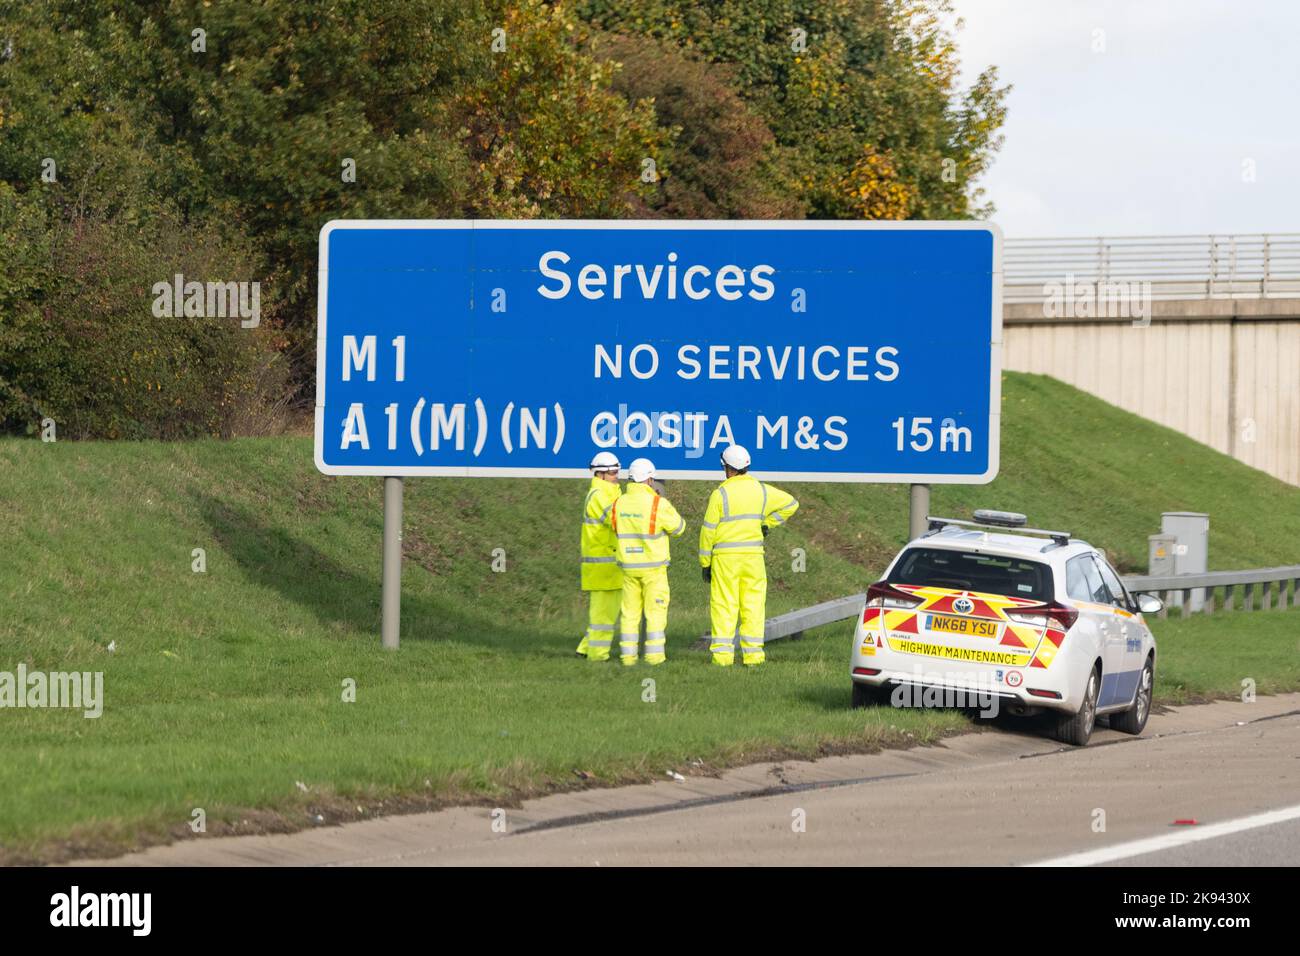 Strada di collegamento M1-A1 - lavoratori di Balfour Beatty in piedi di fronte al segnale di servizi autostradali sulla M1-A1 strada di collegamento vicino a Leeds, Inghilterra, Regno Unito Foto Stock